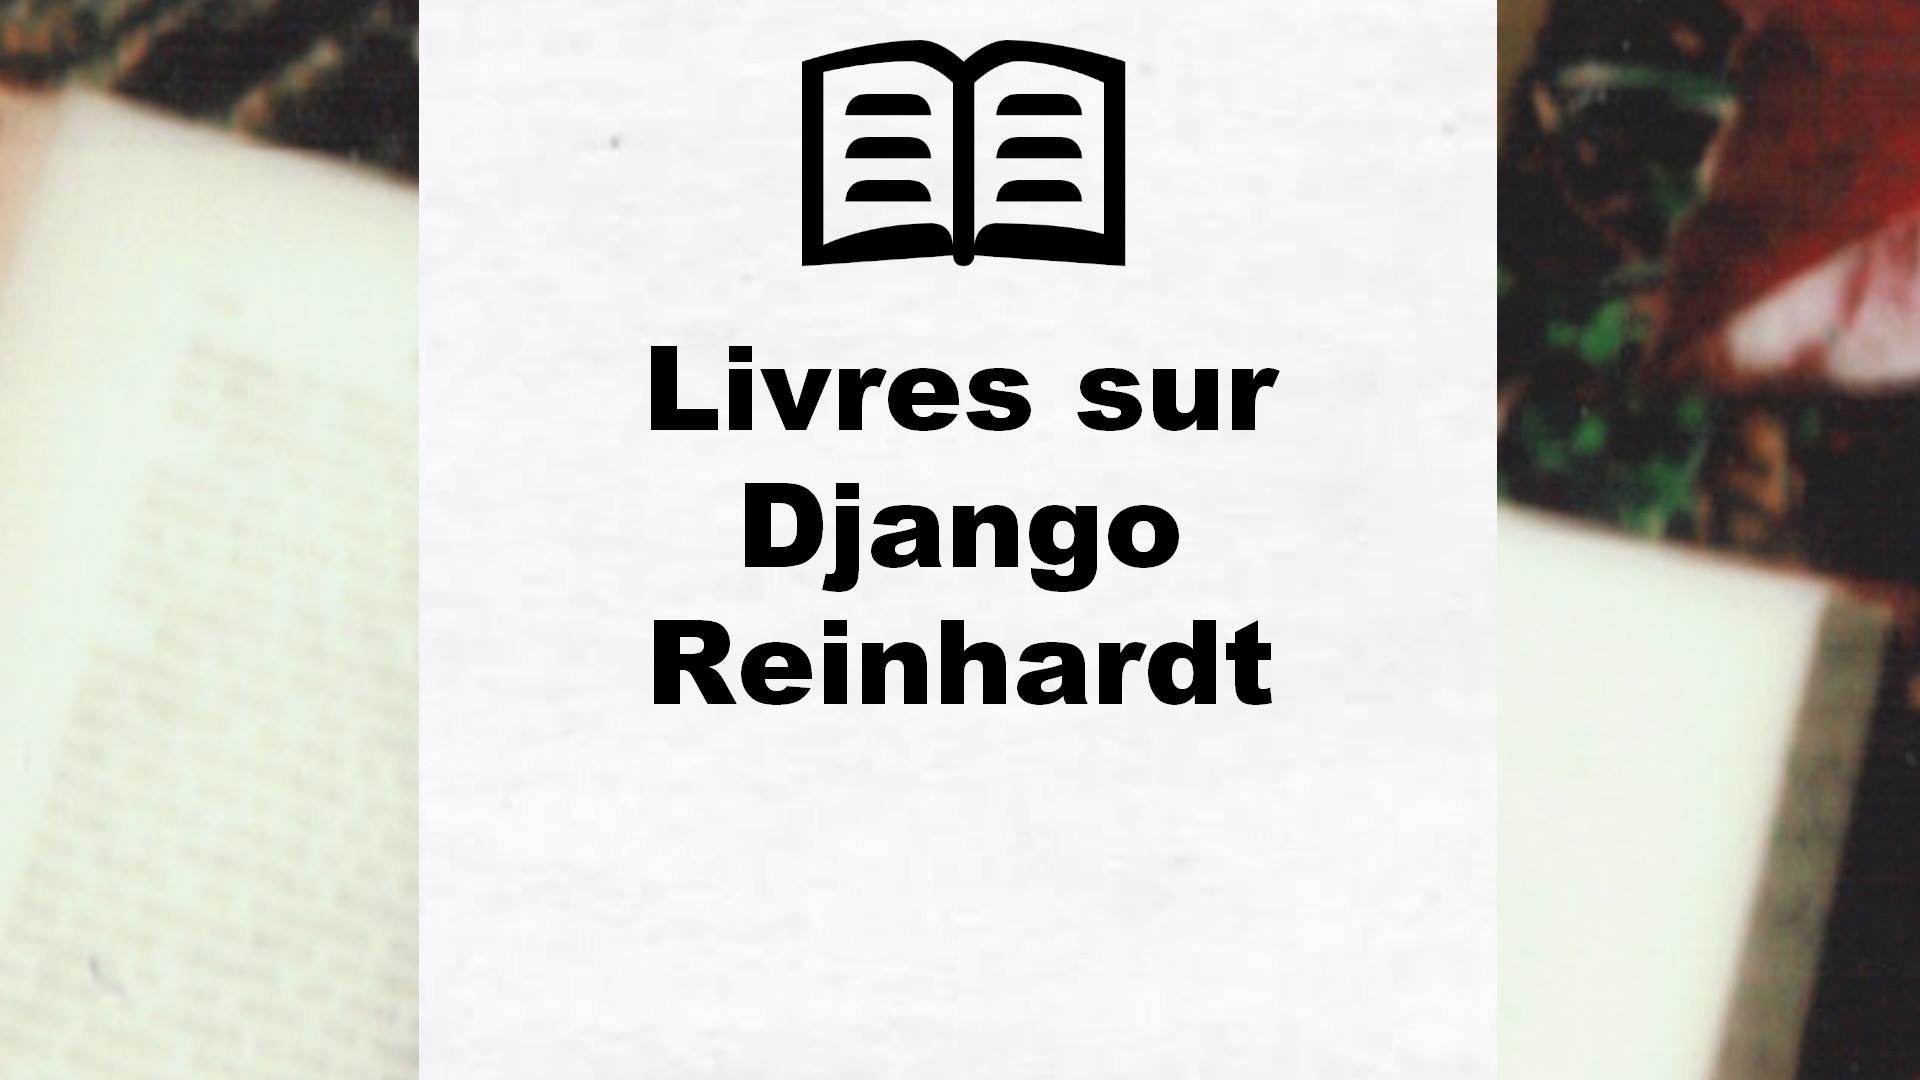 Livres sur Django Reinhardt